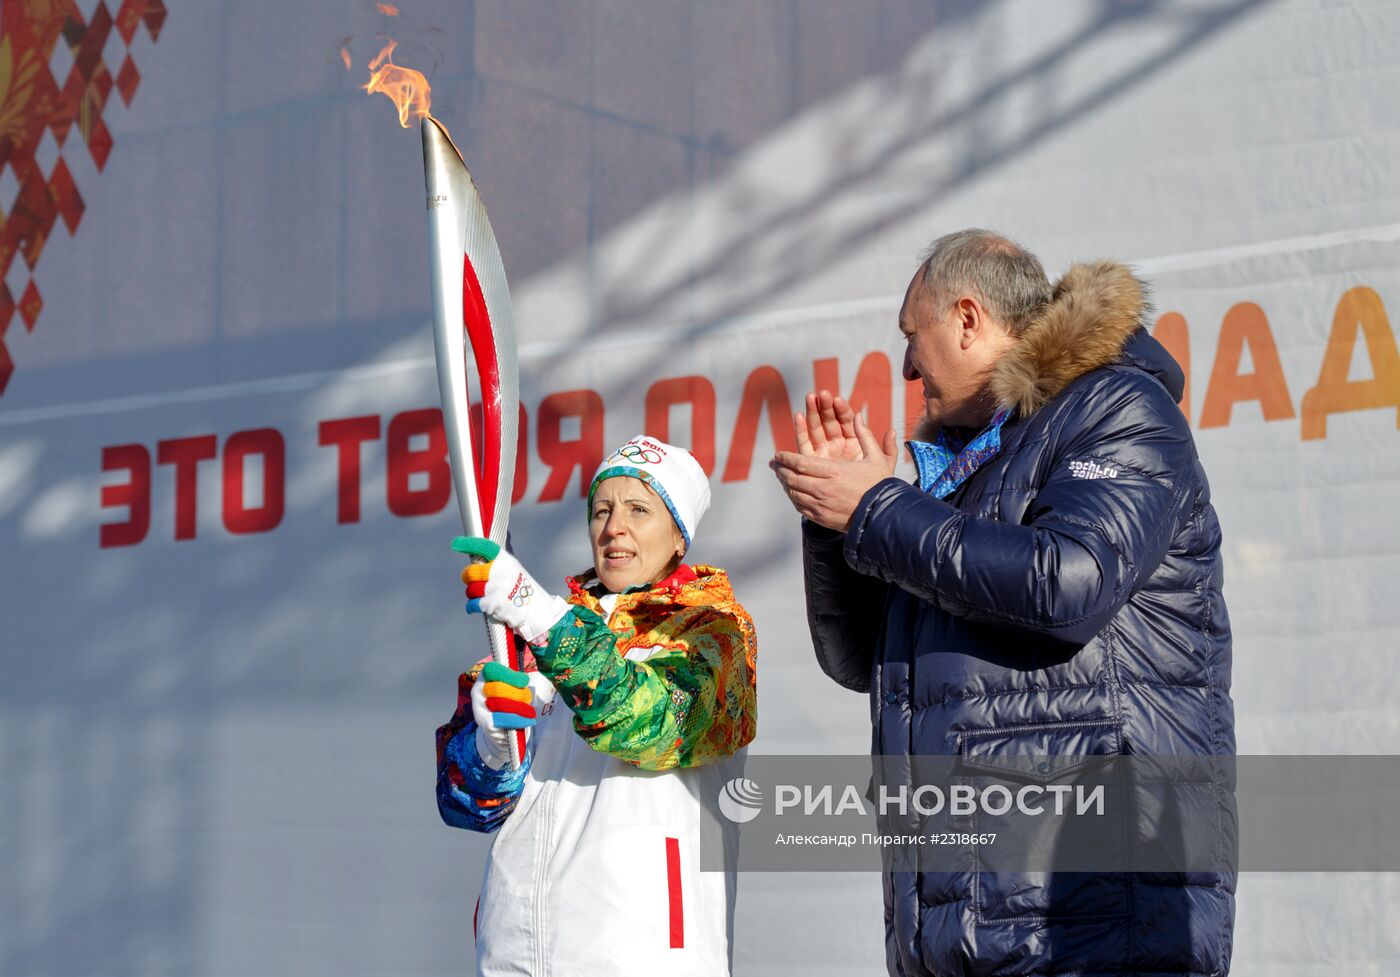 Эстафета Олимпийского огня. Петропавловск-Камчатский